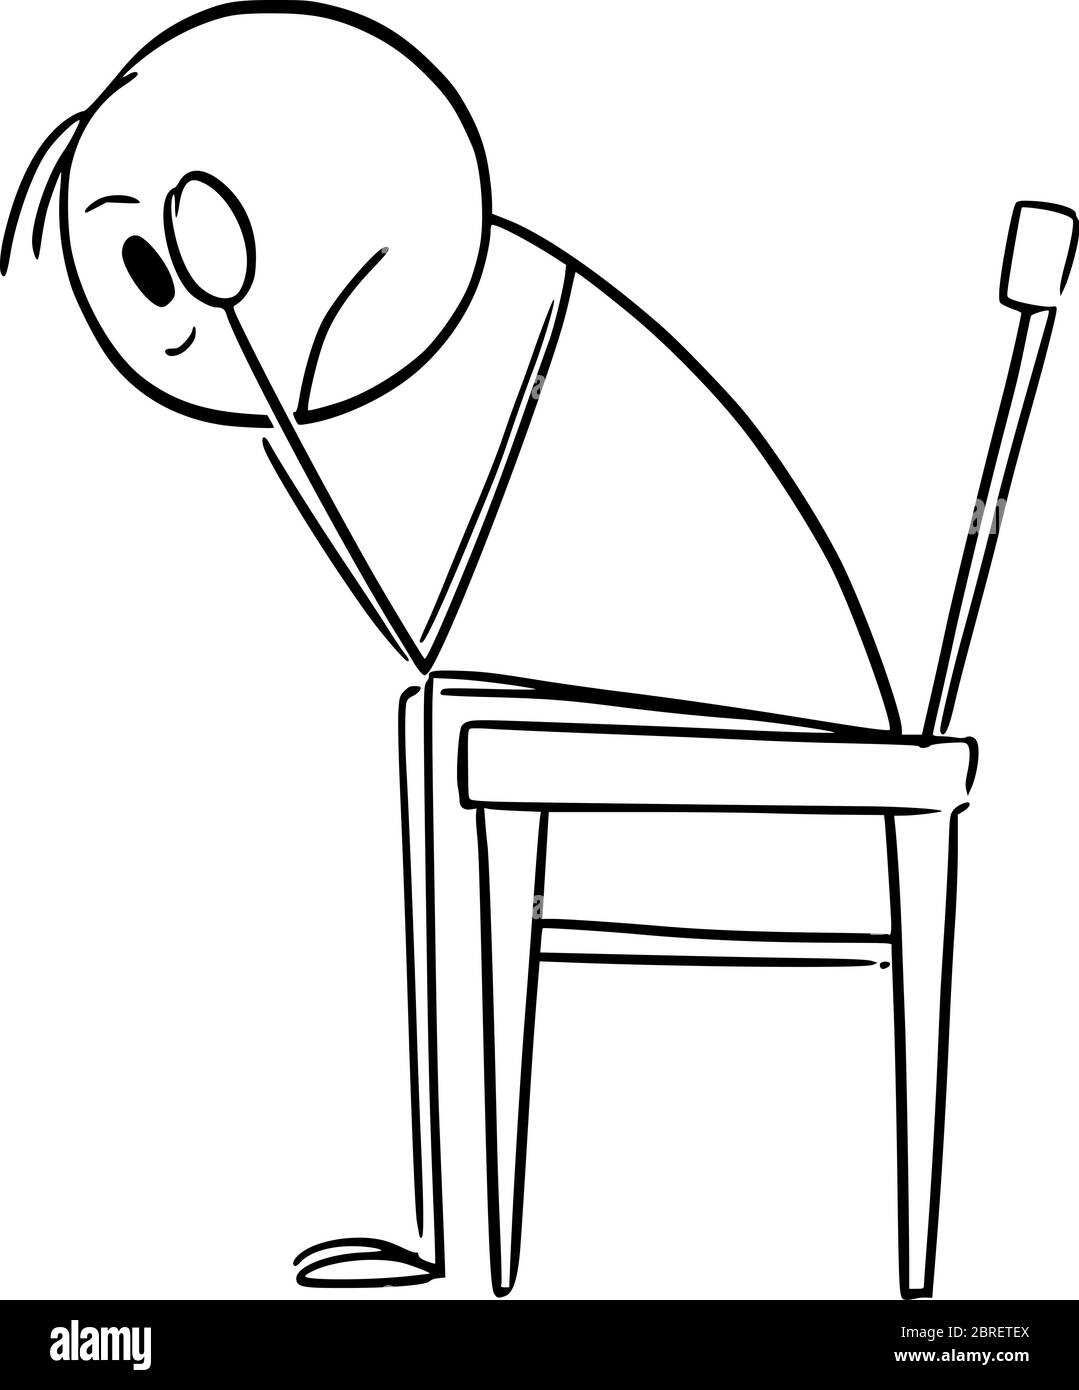 Dessin vectoriel de dessin de dessin de dessin dessin conceptuel illustration de l'homme déprimé ou triste en stress avec la tête dans les mains assis sur la chaise. Illustration de Vecteur